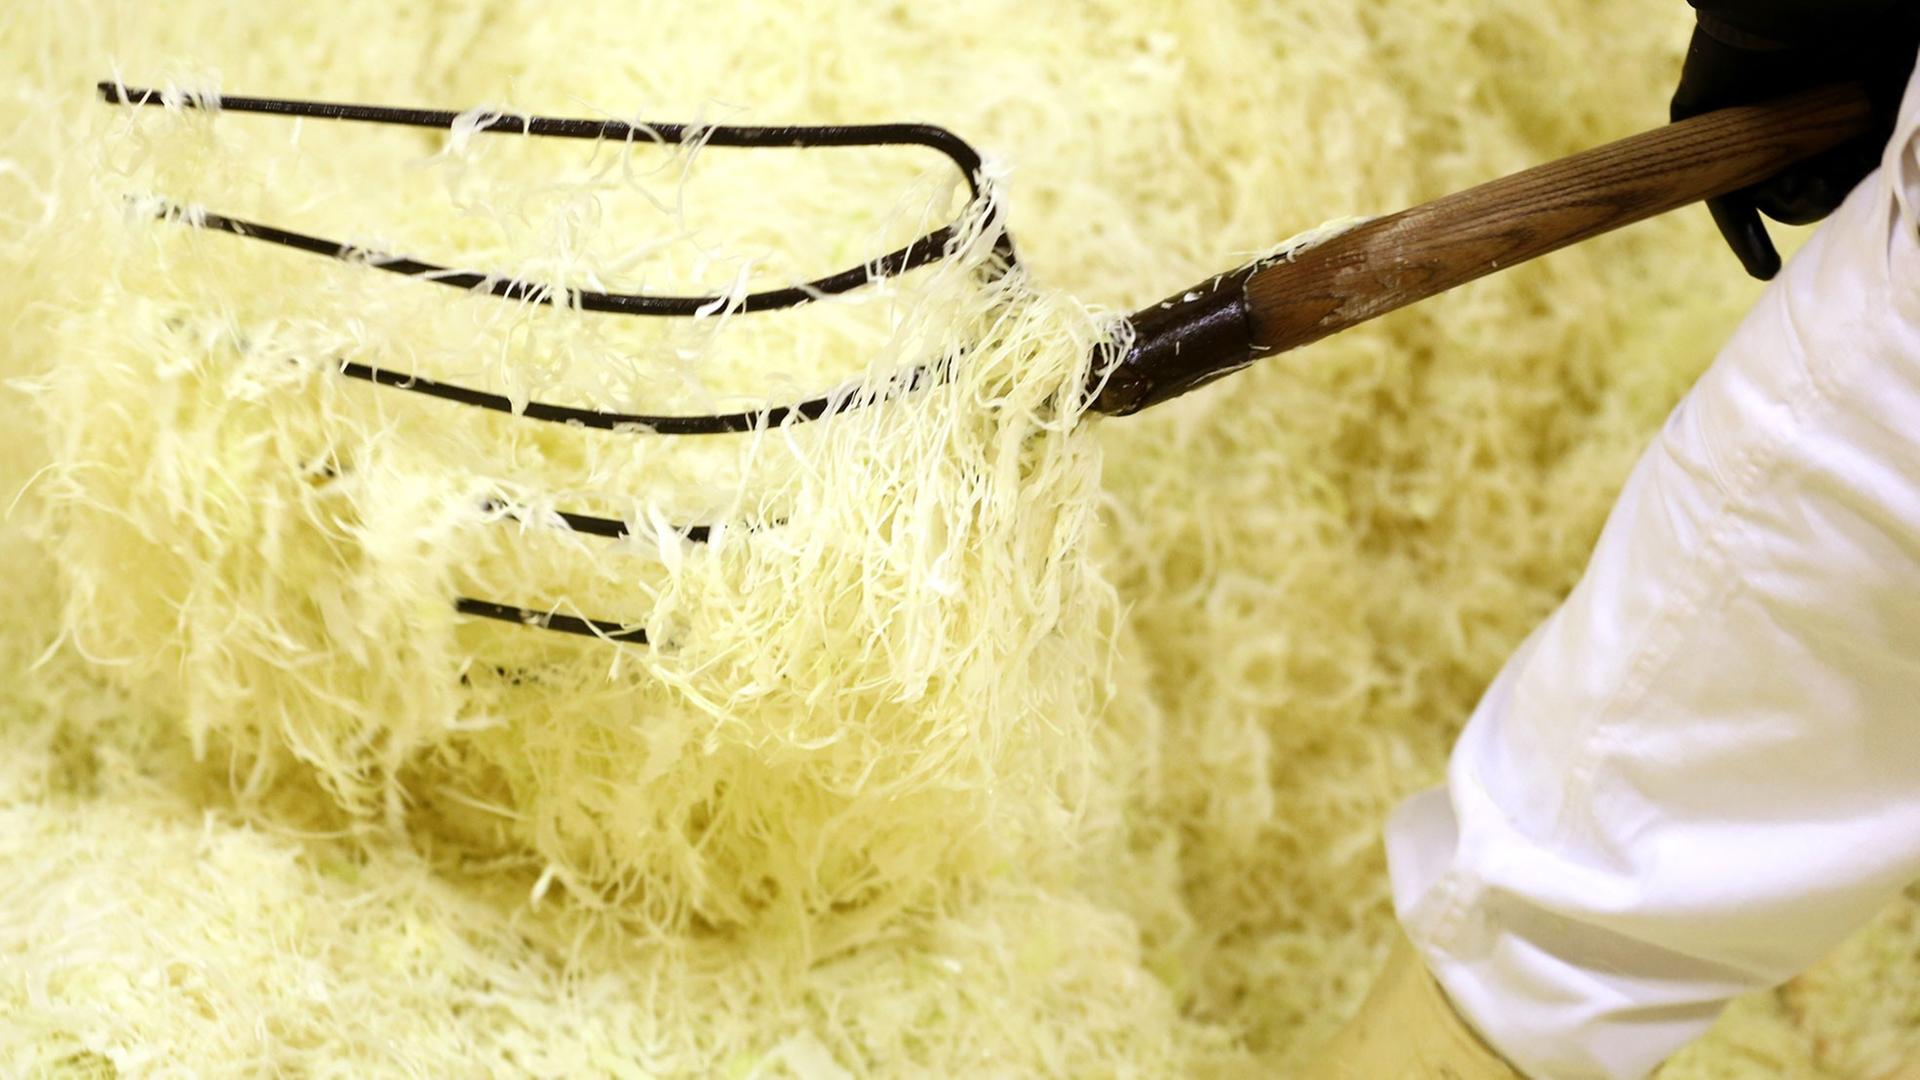 Geraspelten und gesalzenen Weißkohl für die Weiterverarbeitung zu Sauerkraut in einem "Sauerkrautbunker".